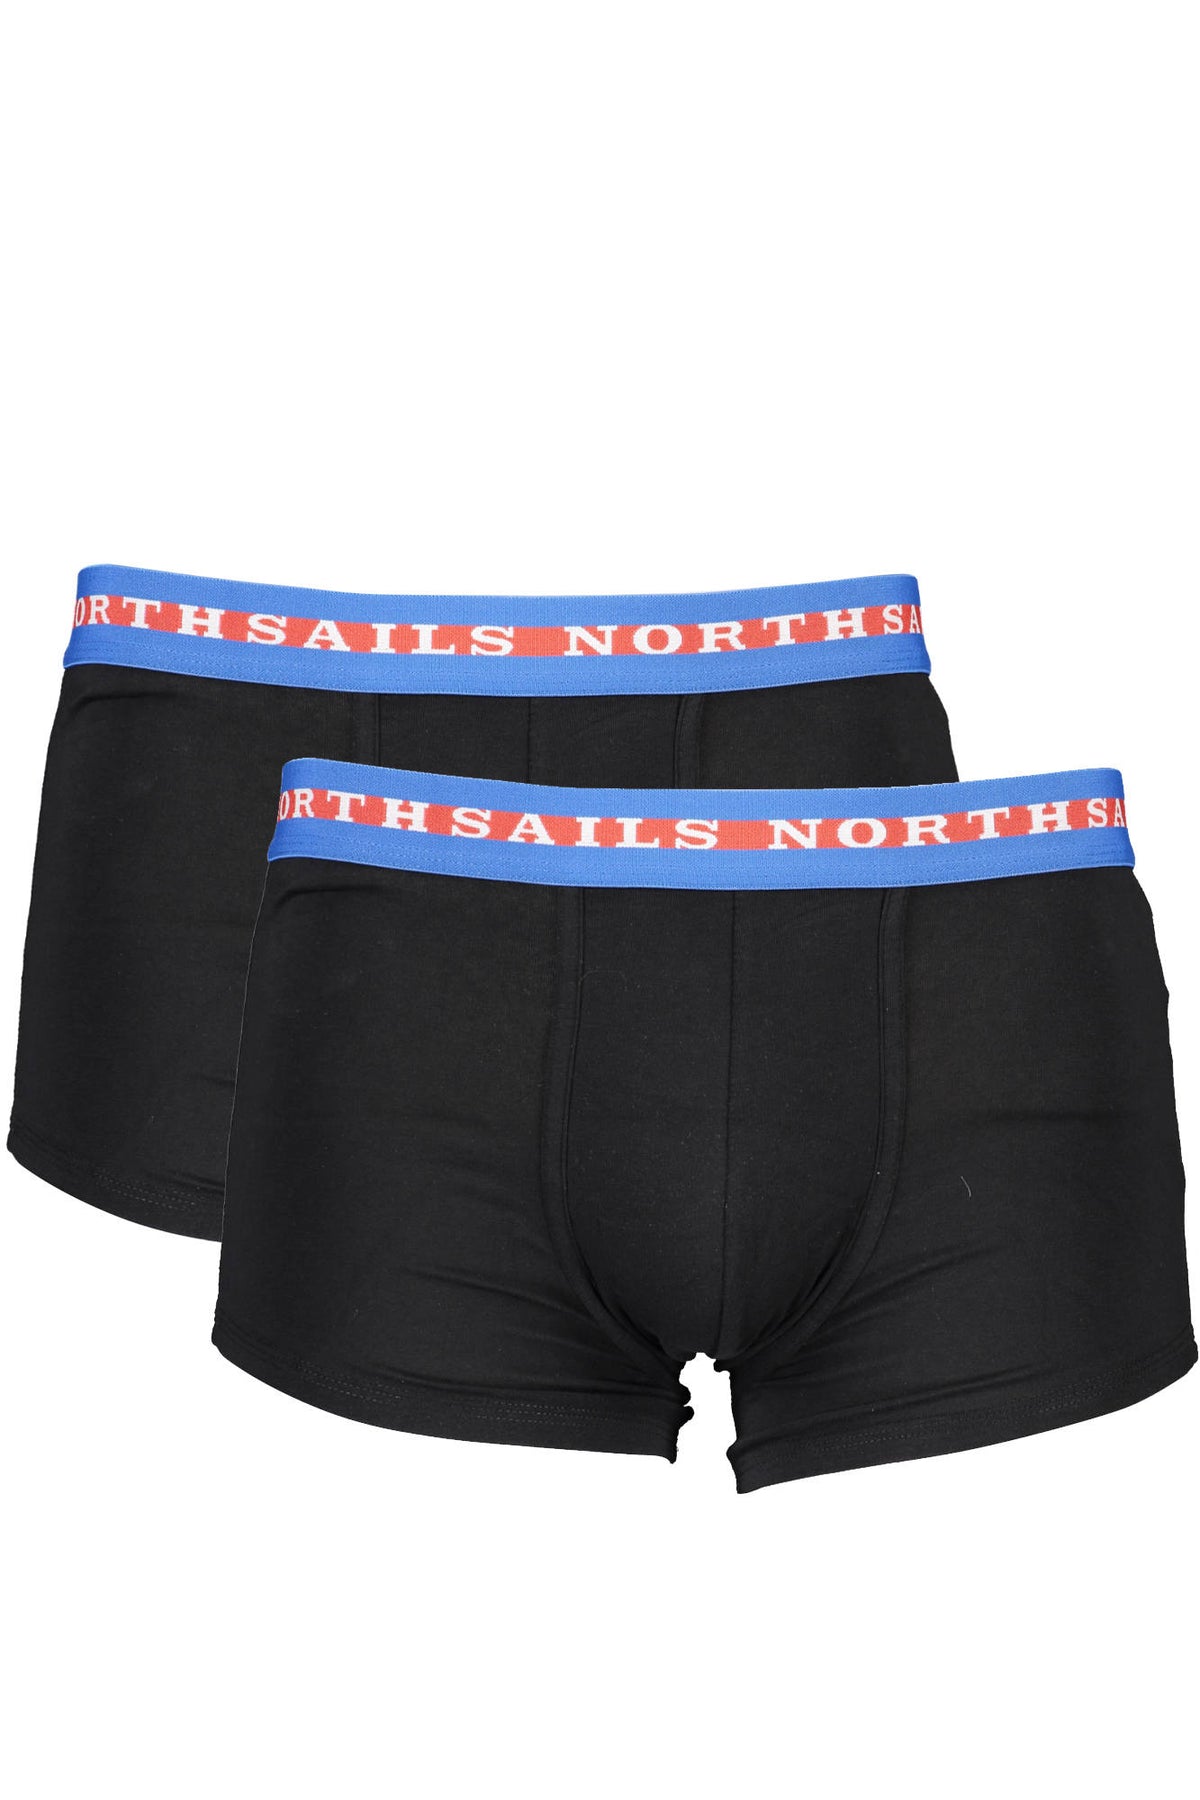 NORTH SAILS Herren Boxershort Boxer Unterhose Unterwäsche